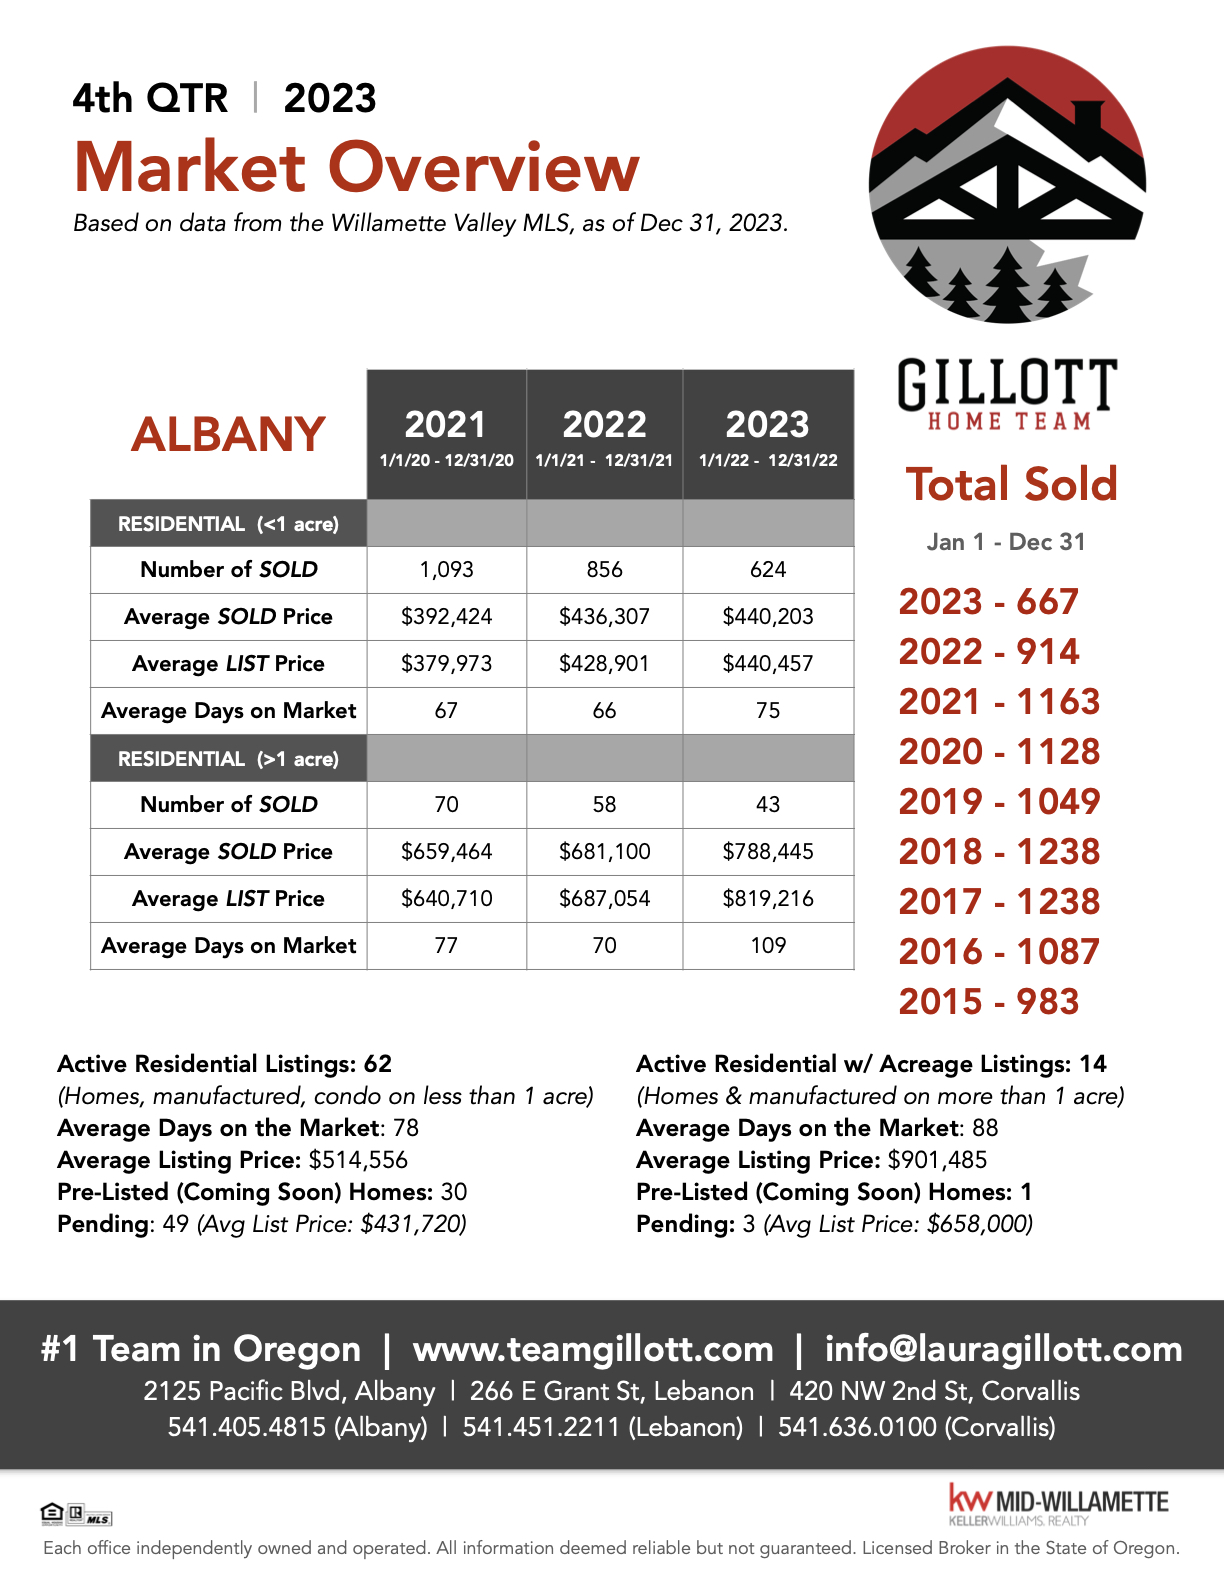 Images - 4th Qtr Albany 2023.1 (1).jpeg